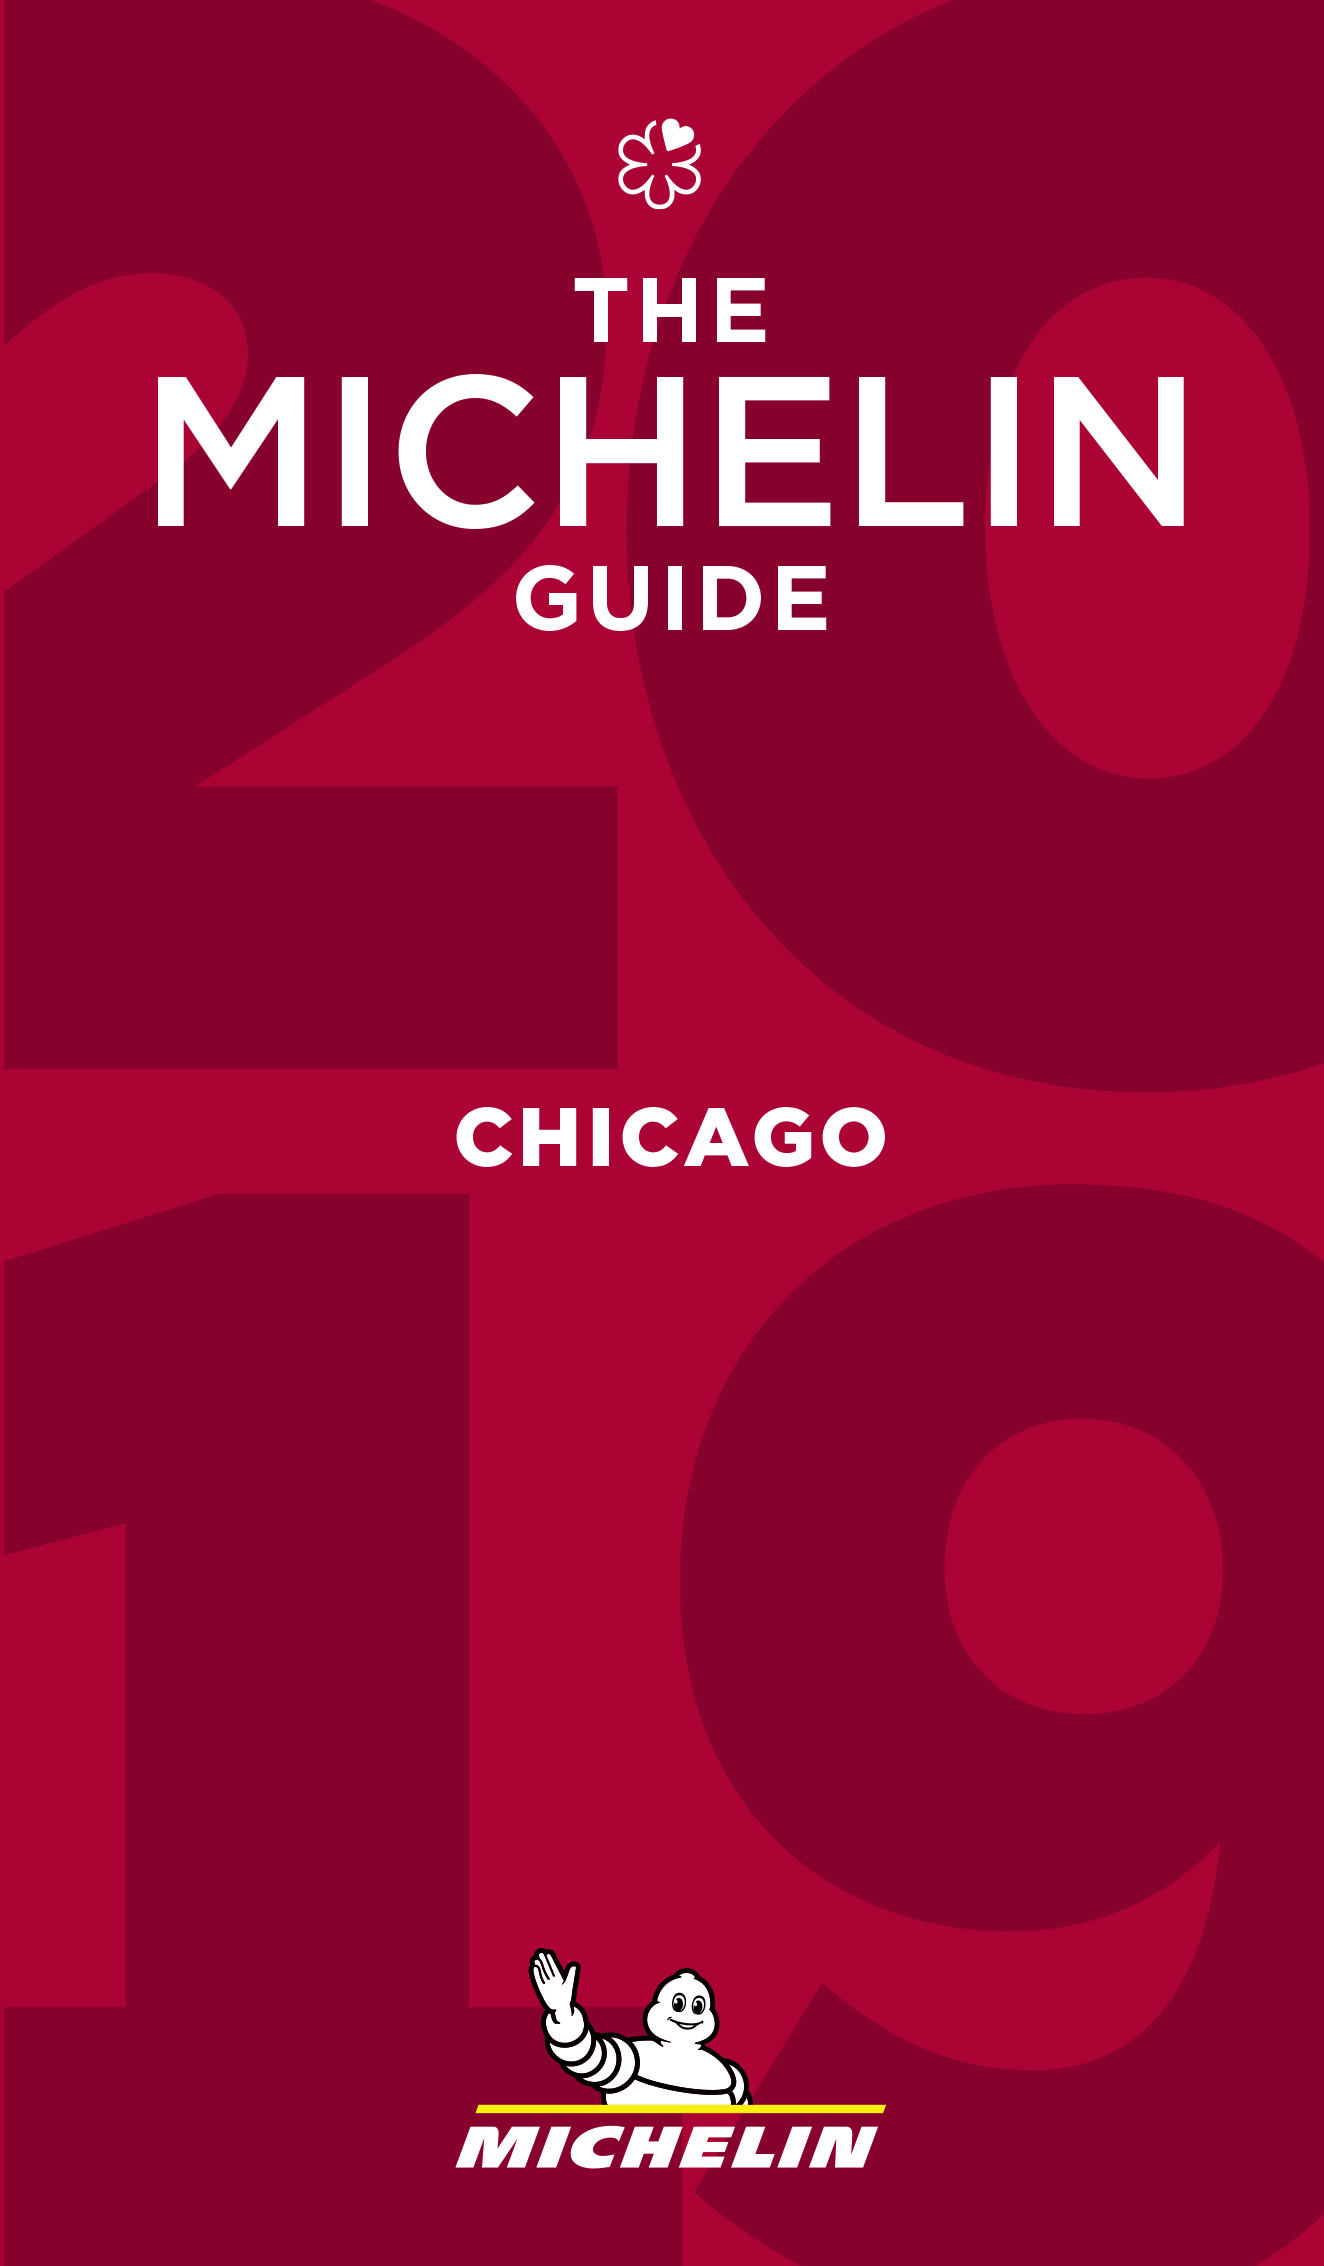 Guia MICHELIN de Chicago 2019 apresenta 9 novos Bib Gourmands e 24 tipos de culinária :: Michelin North America, Inc.